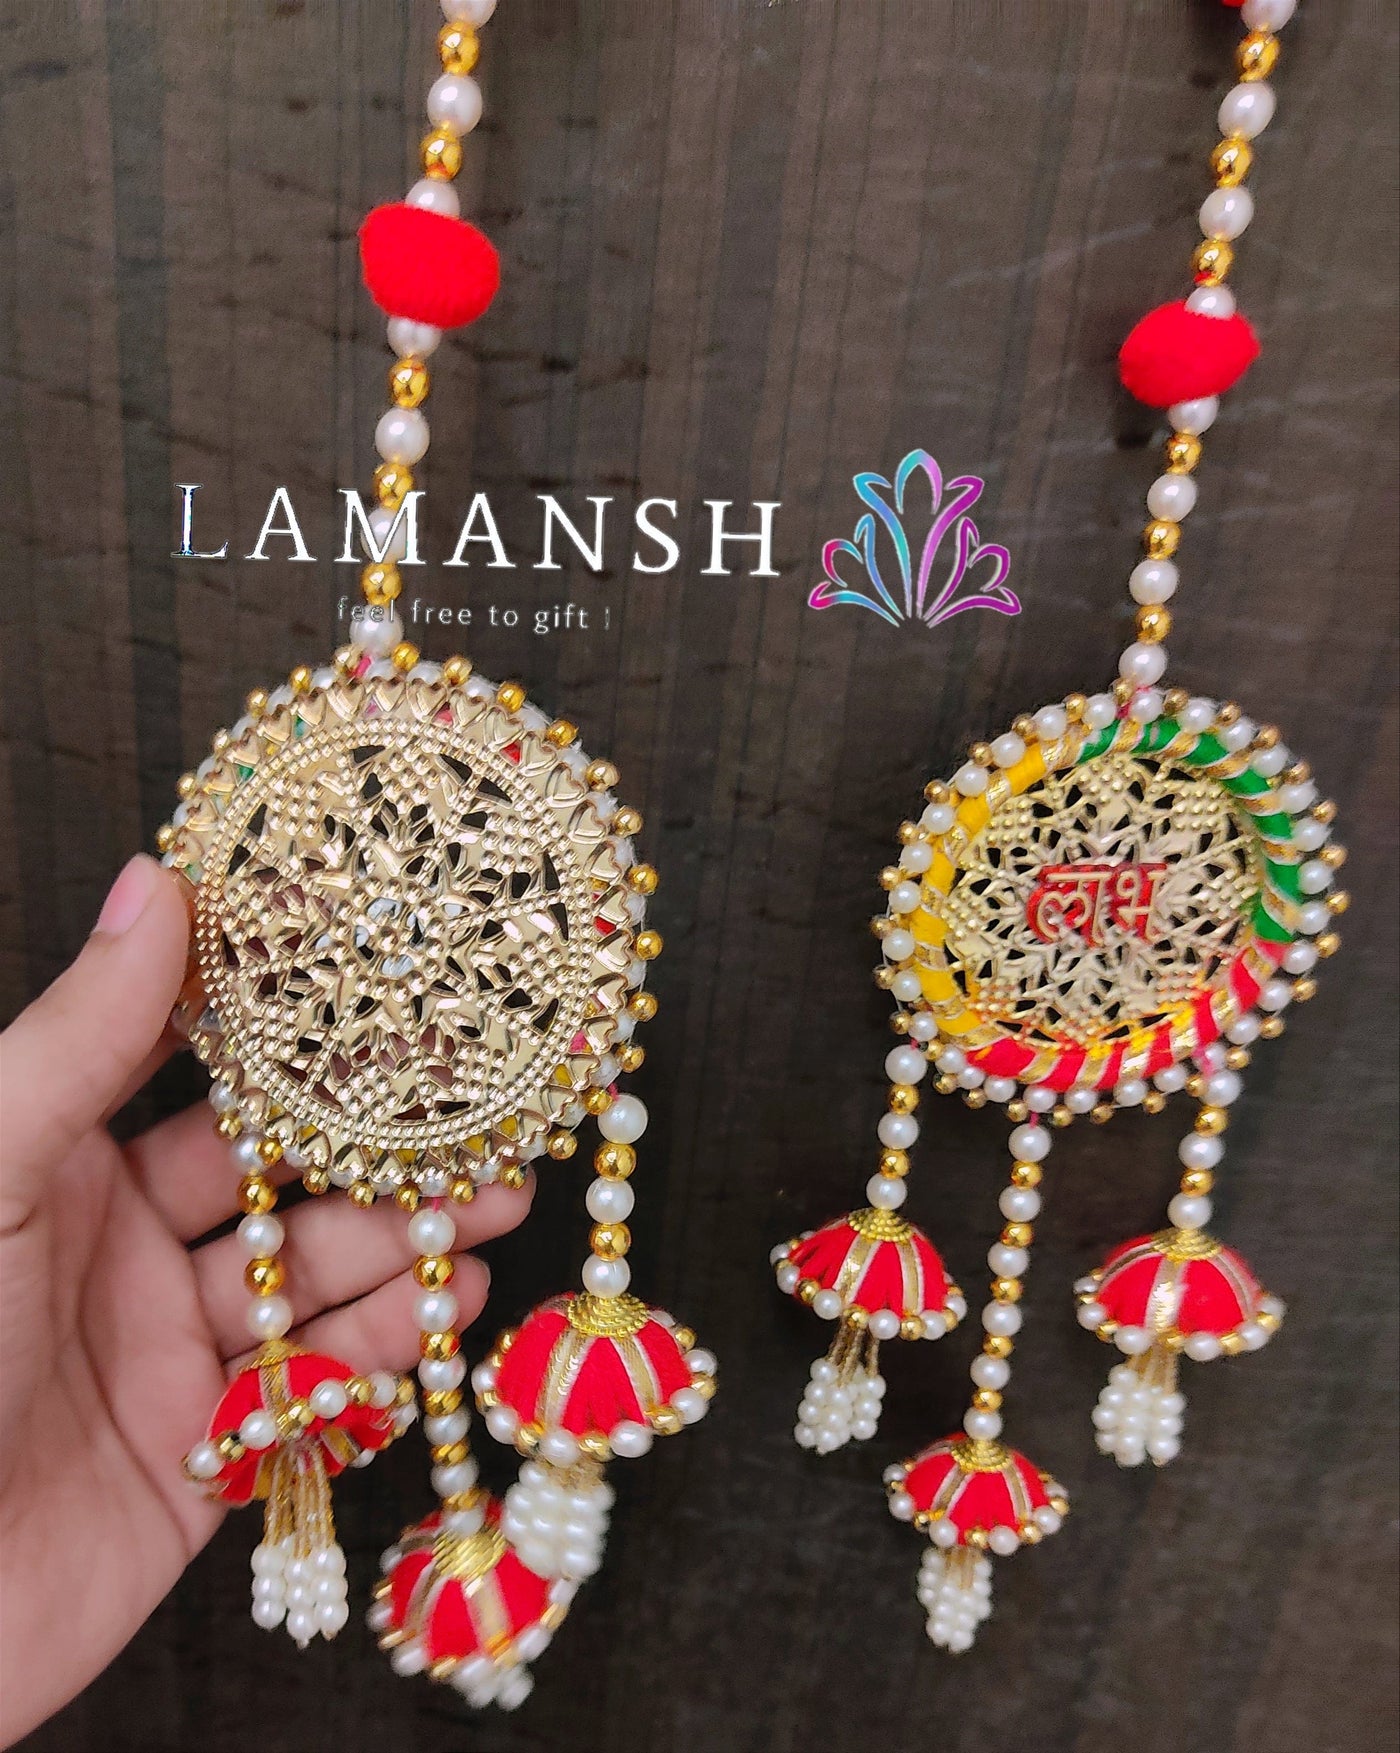 Lamansh shubh labh LAMANSH Decorative Shubh Labh Hangings for Navratri & Diwali Decor | Hangings for door entrance in festivals